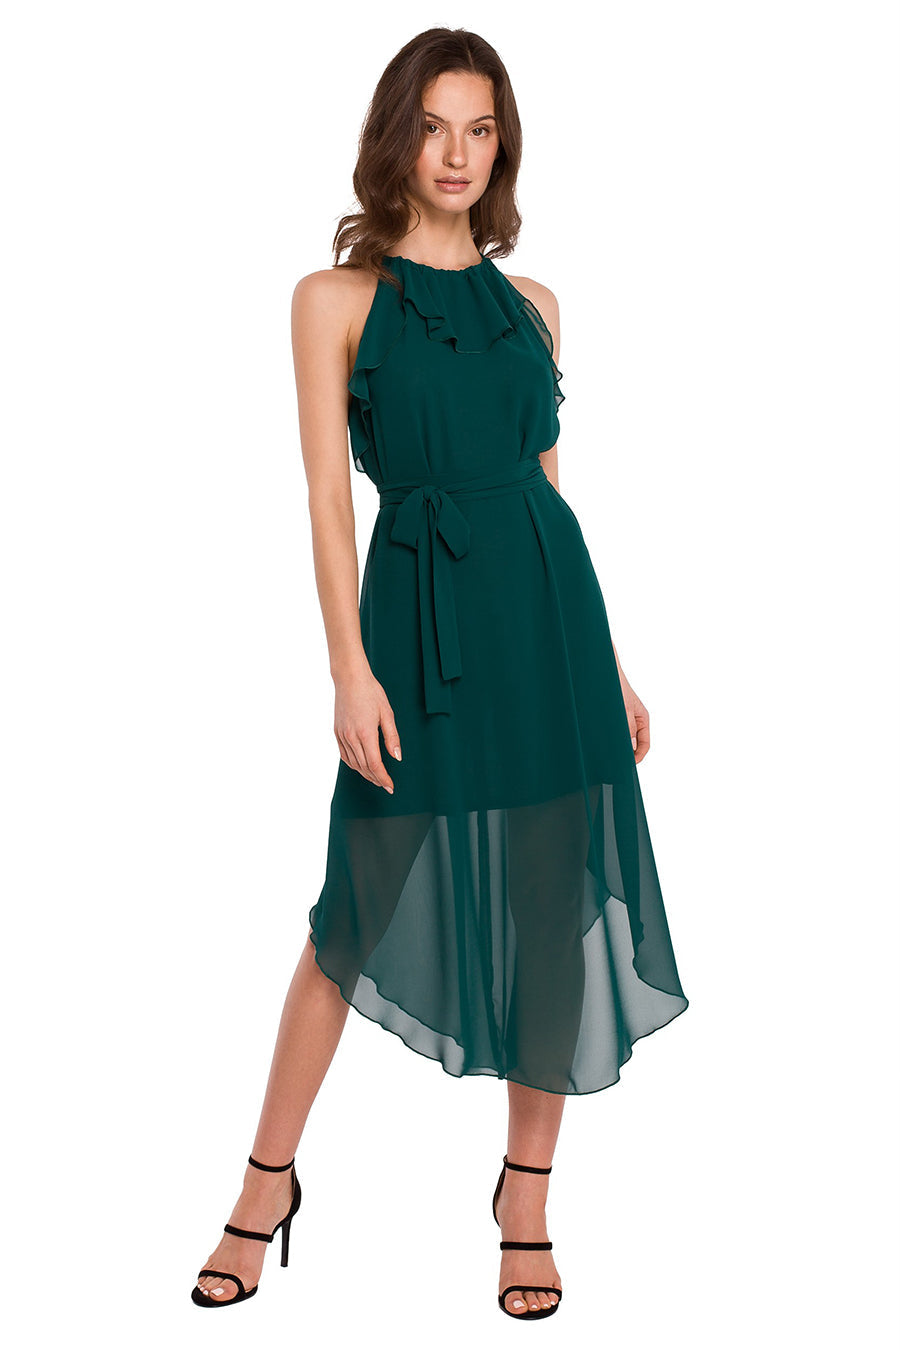 Γυναικείο φόρεμα Halline, Πράσινο 1